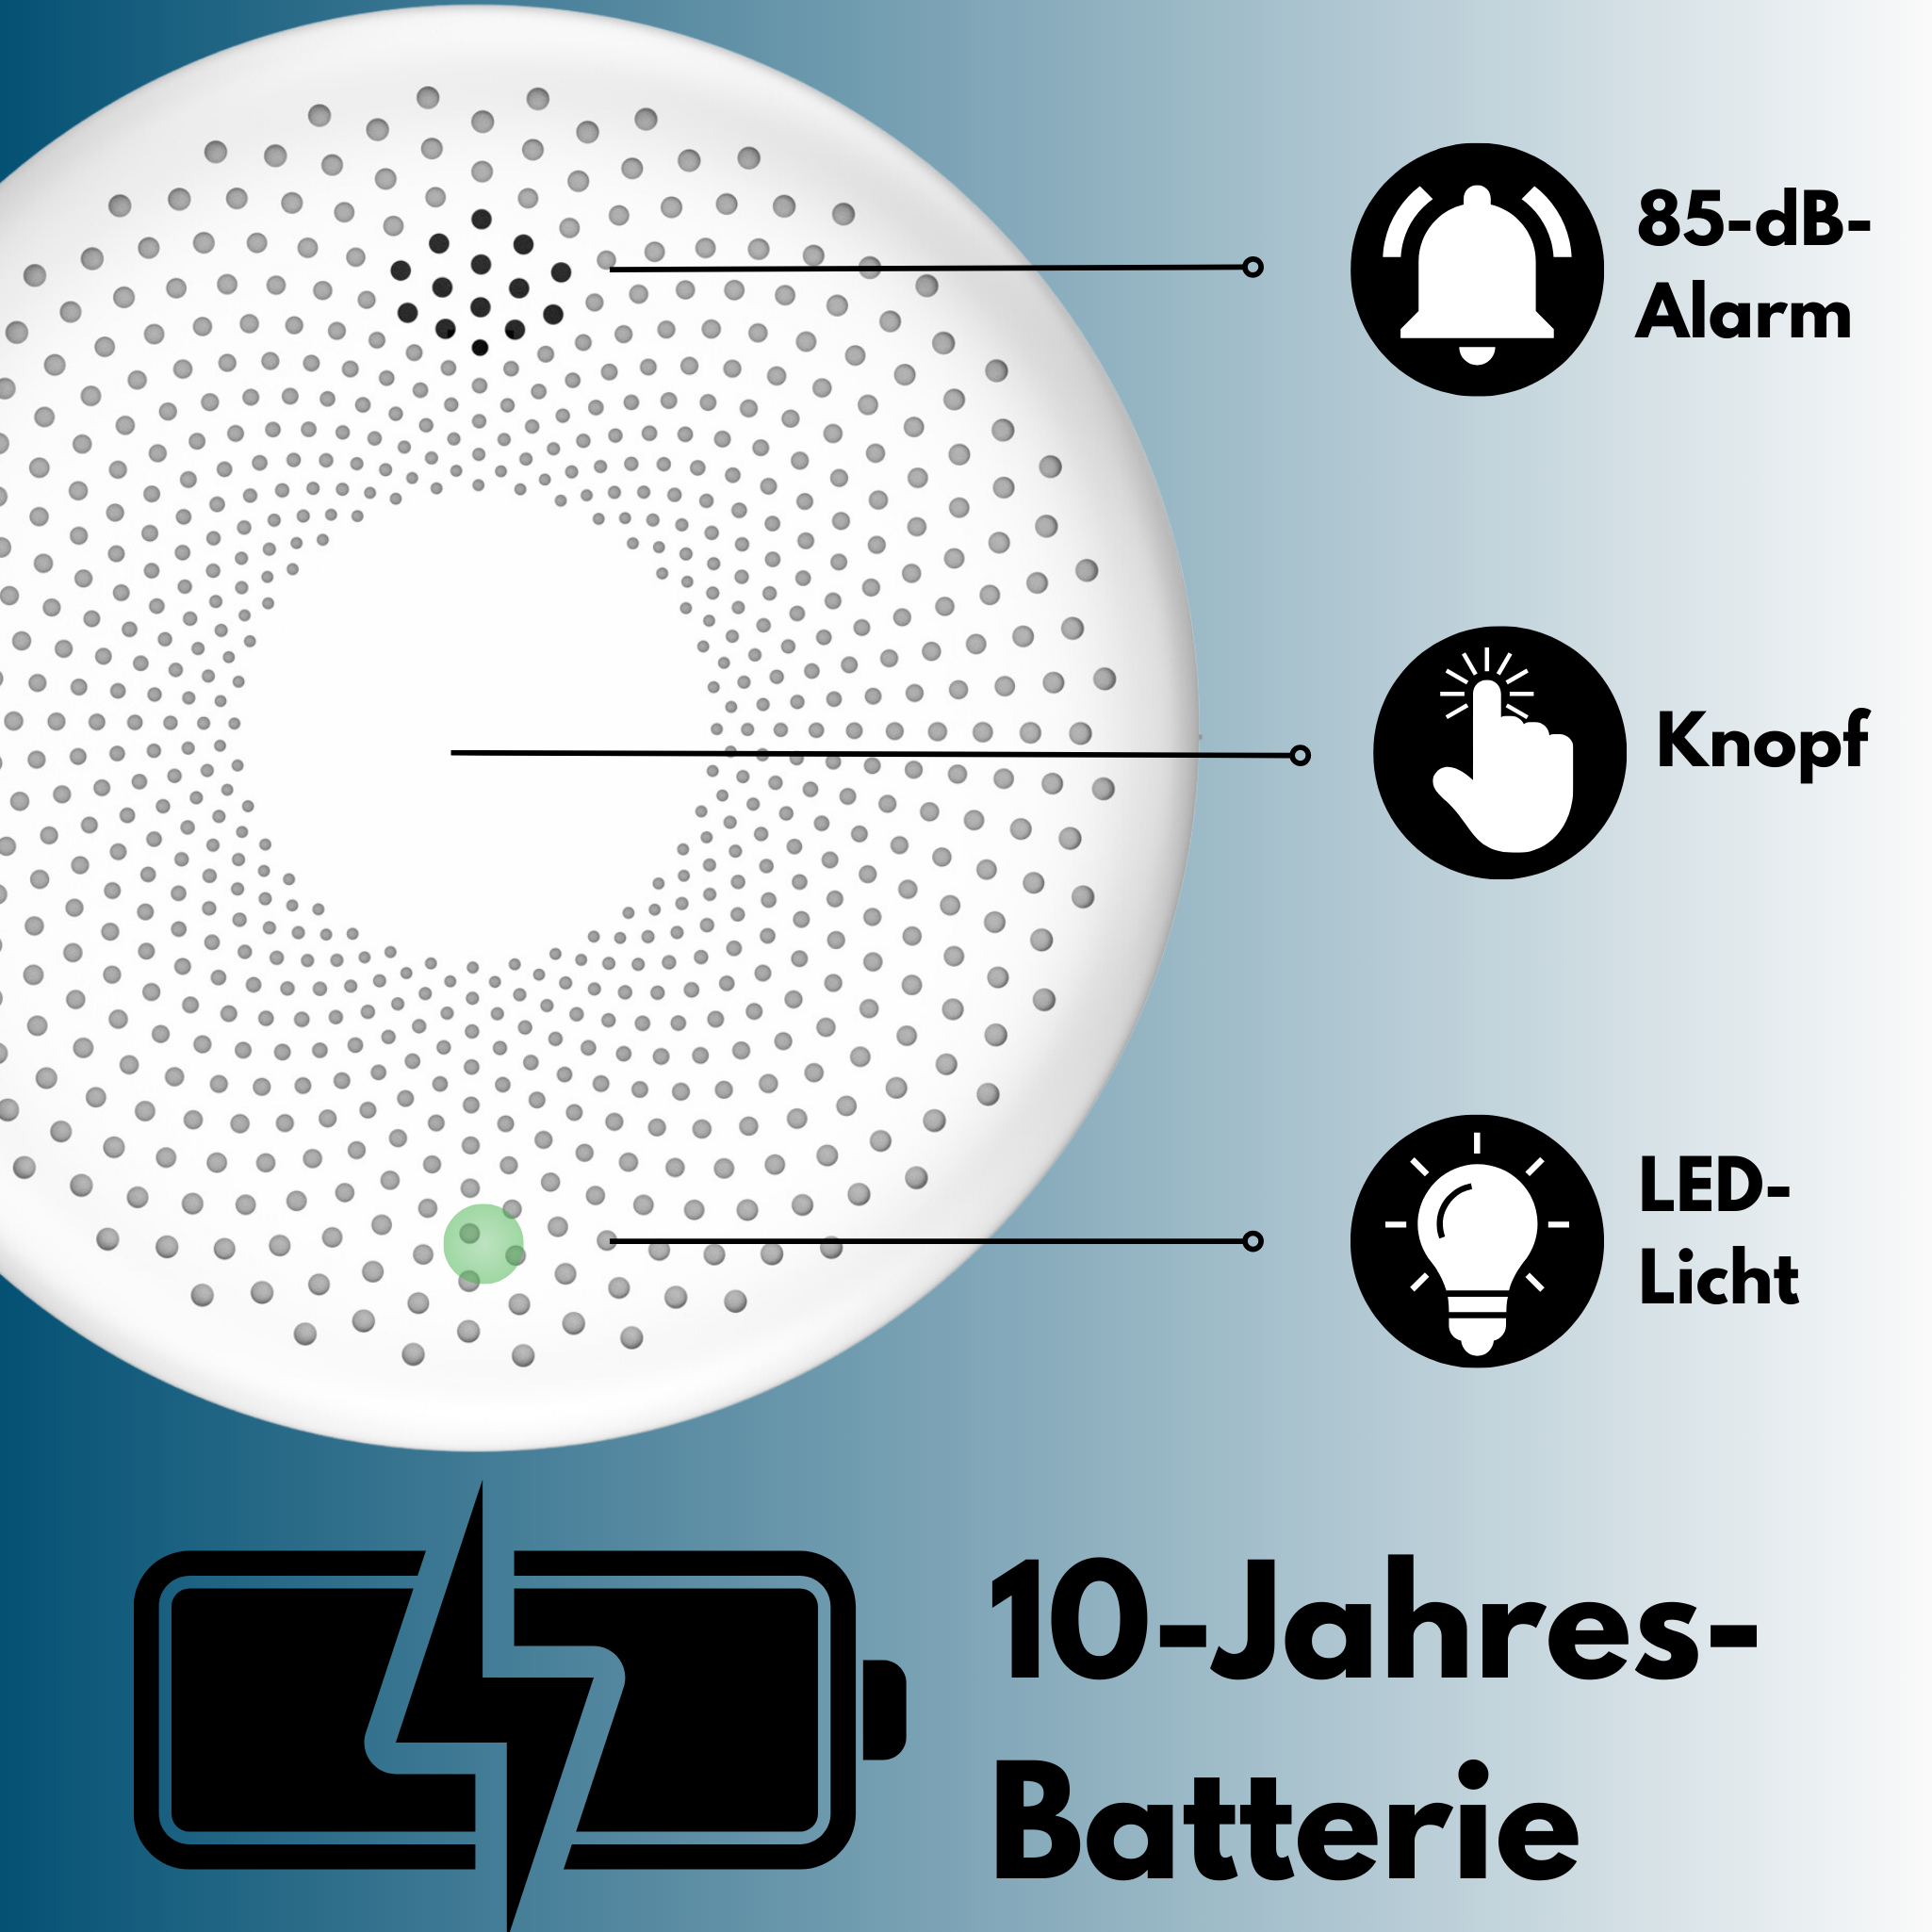 AROHA Smart - 10 Jahres und Combimelder 2 Batterie Rauch, weiß Connect Kohlenmonoxid Set - WLAN